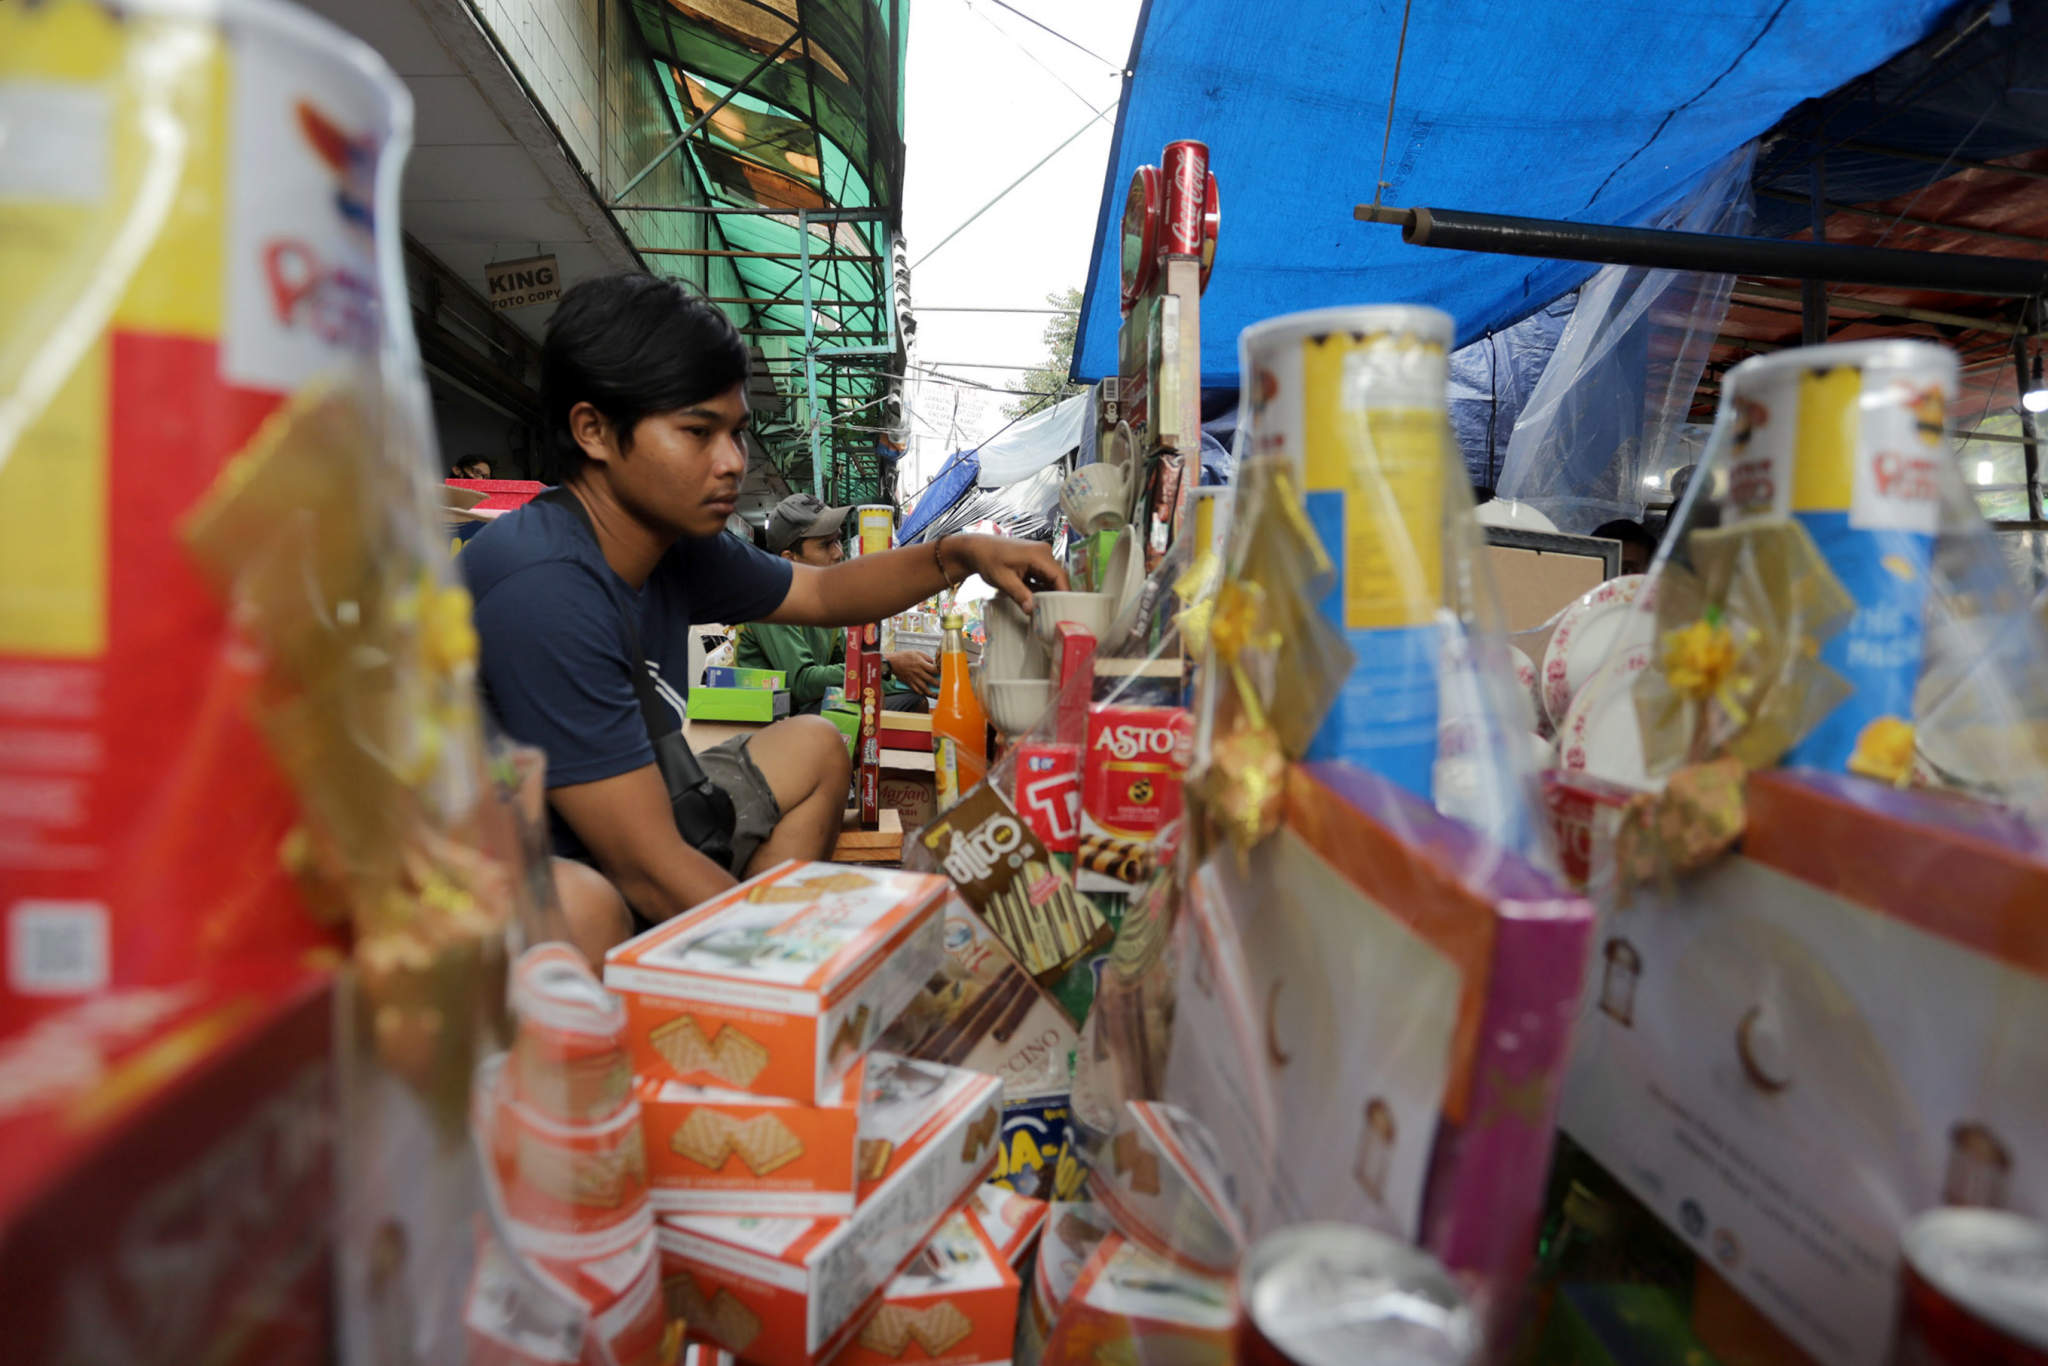 <p>Pedagang menata bingkisan lebaran yang dijual di kios Parcel musiman kawasan Cikini, Jakarta, Kamis, 6 Mei 2021. Foto: Ismail Pohan/TrenAsia</p>
